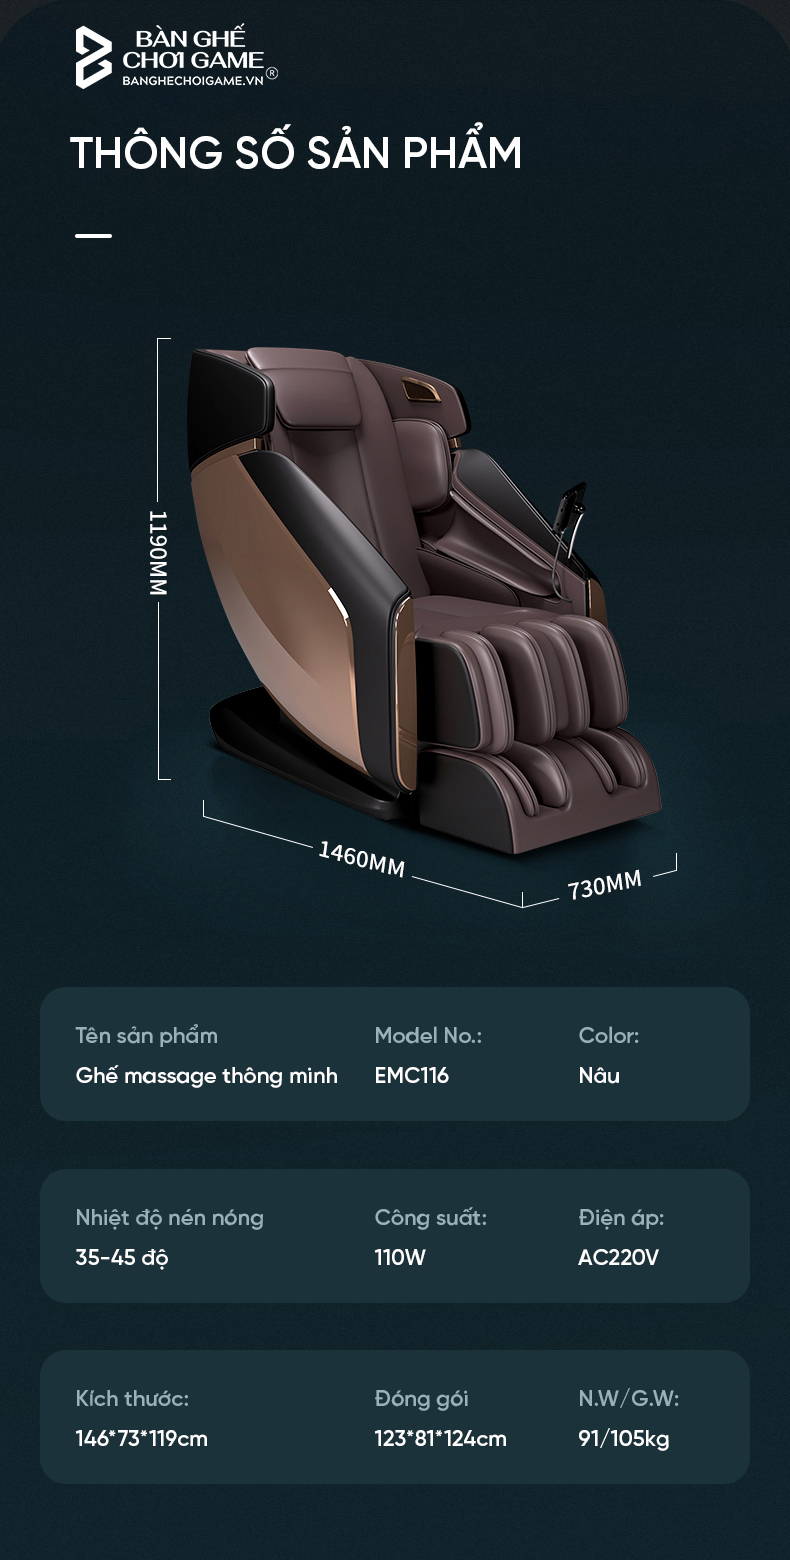 Ghế massage EDRA Hestia EMC116 là chiếc ghế massage cao cấp của E-Dra, dành cho người đang tìm kiếm một chiếc ghế massage toàn thân với nhiều chức năng massage tự động. Đặc biệt trên chiếc EDRA Hestia EMC116 còn được trang bị thanh ray SL Track tới 135cm giúp cho các tác vụ massage được trở nên hoàn hảo hơn.